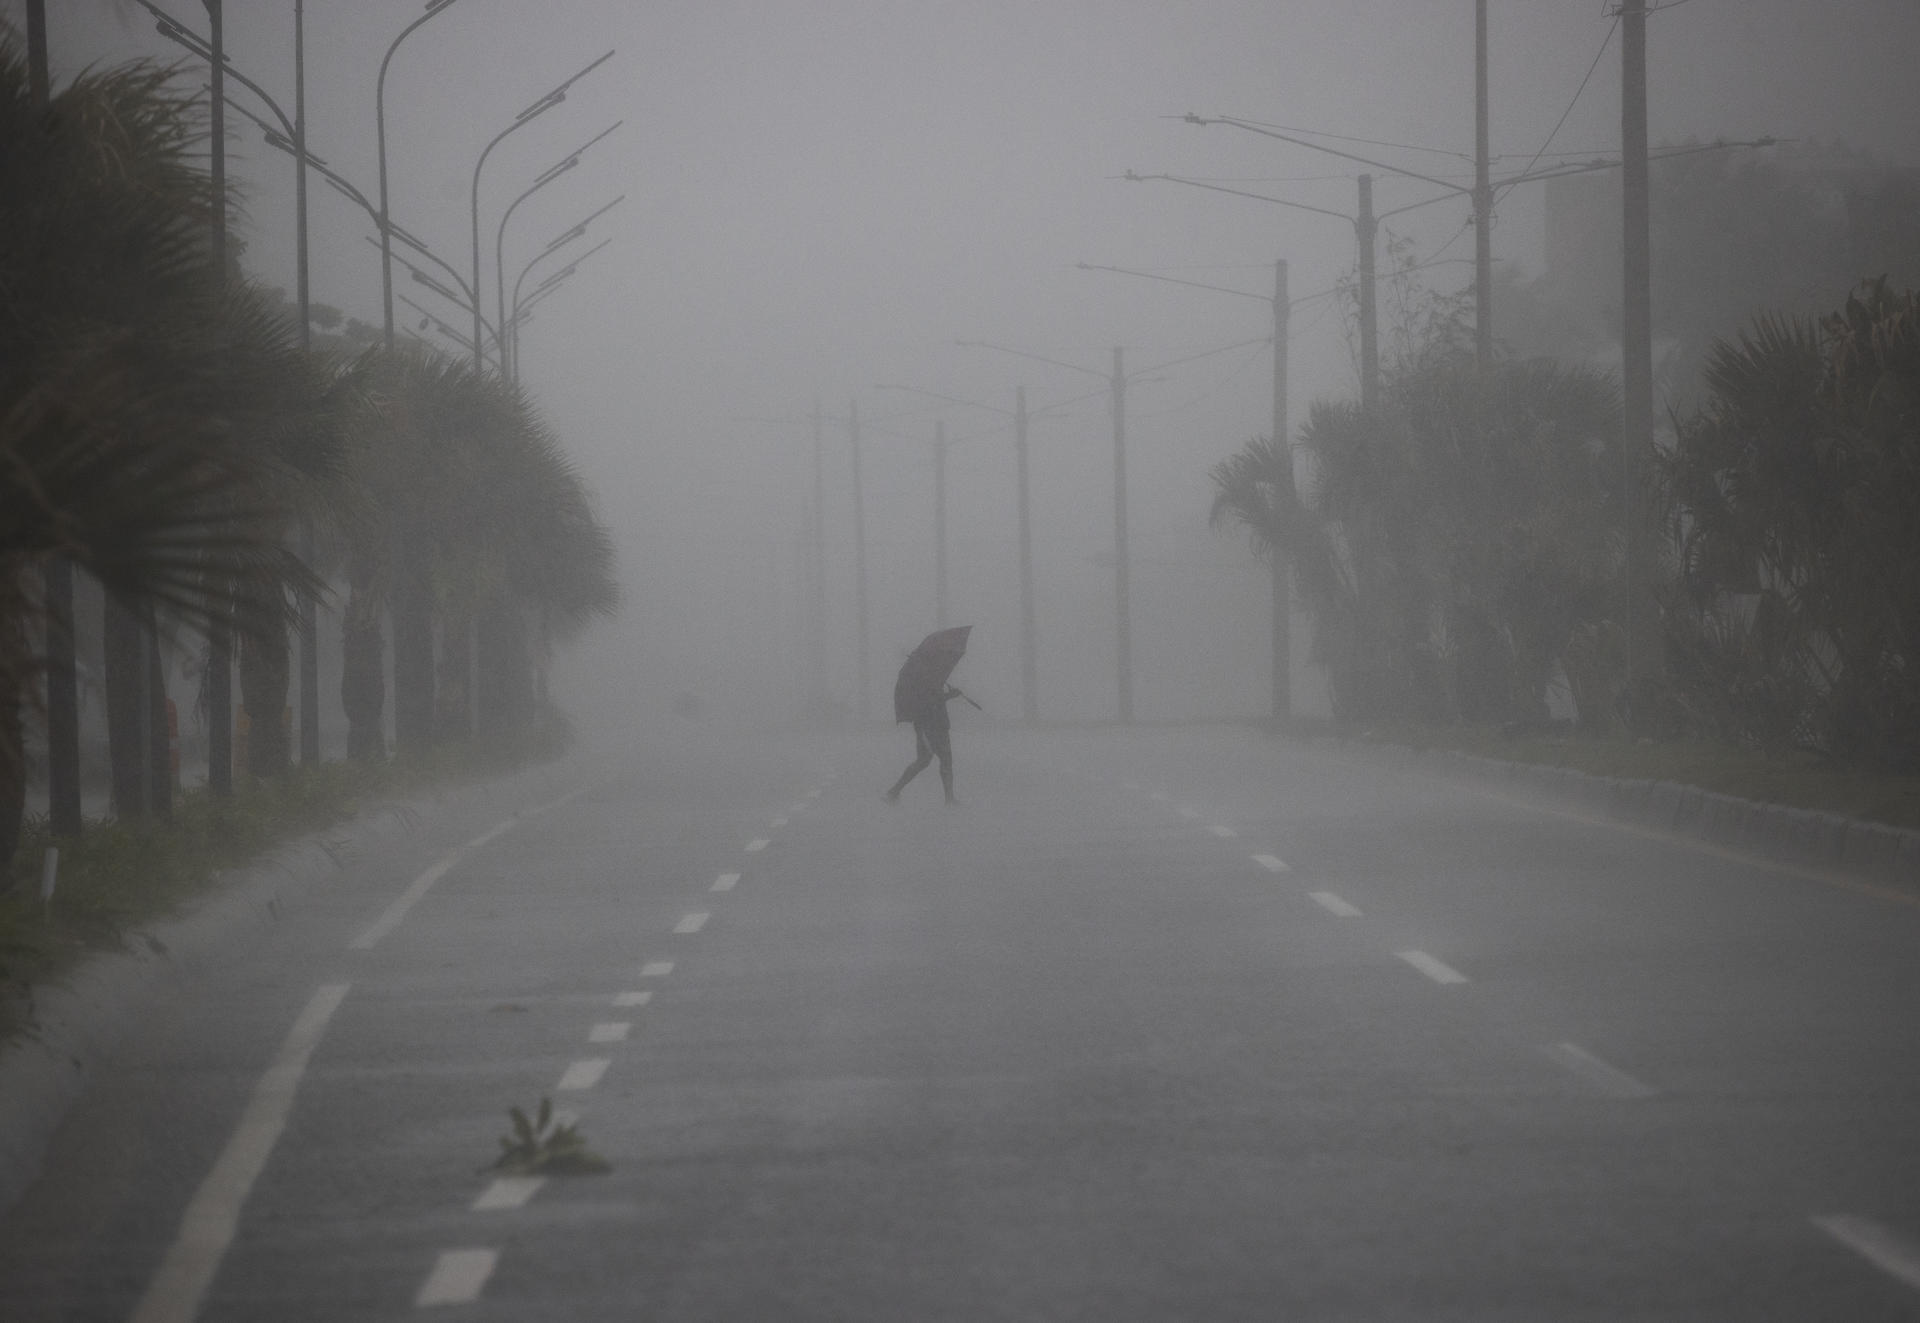 Una persona cruza hoy una avenida bajo una fuerte lluvia debido al paso de una tormenta tropical en Santo Domingo (República Dominicana). Fotografía de archivo. EFE/Orlando Barría